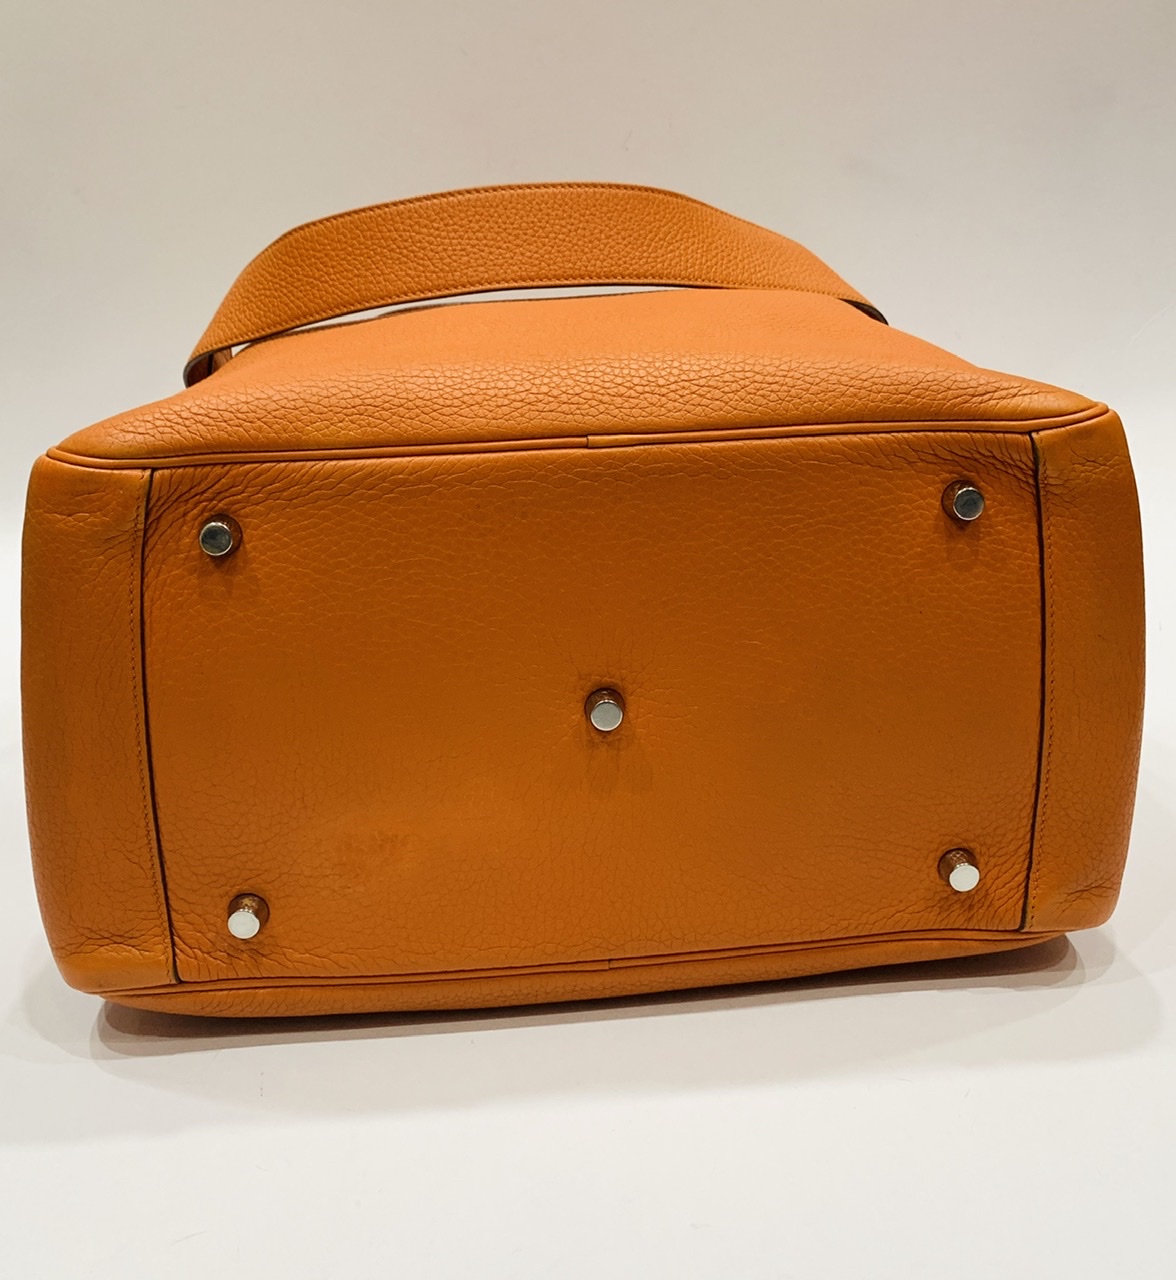 bagfetishperson: Bag of the day: Hermes Lindy 34 orange